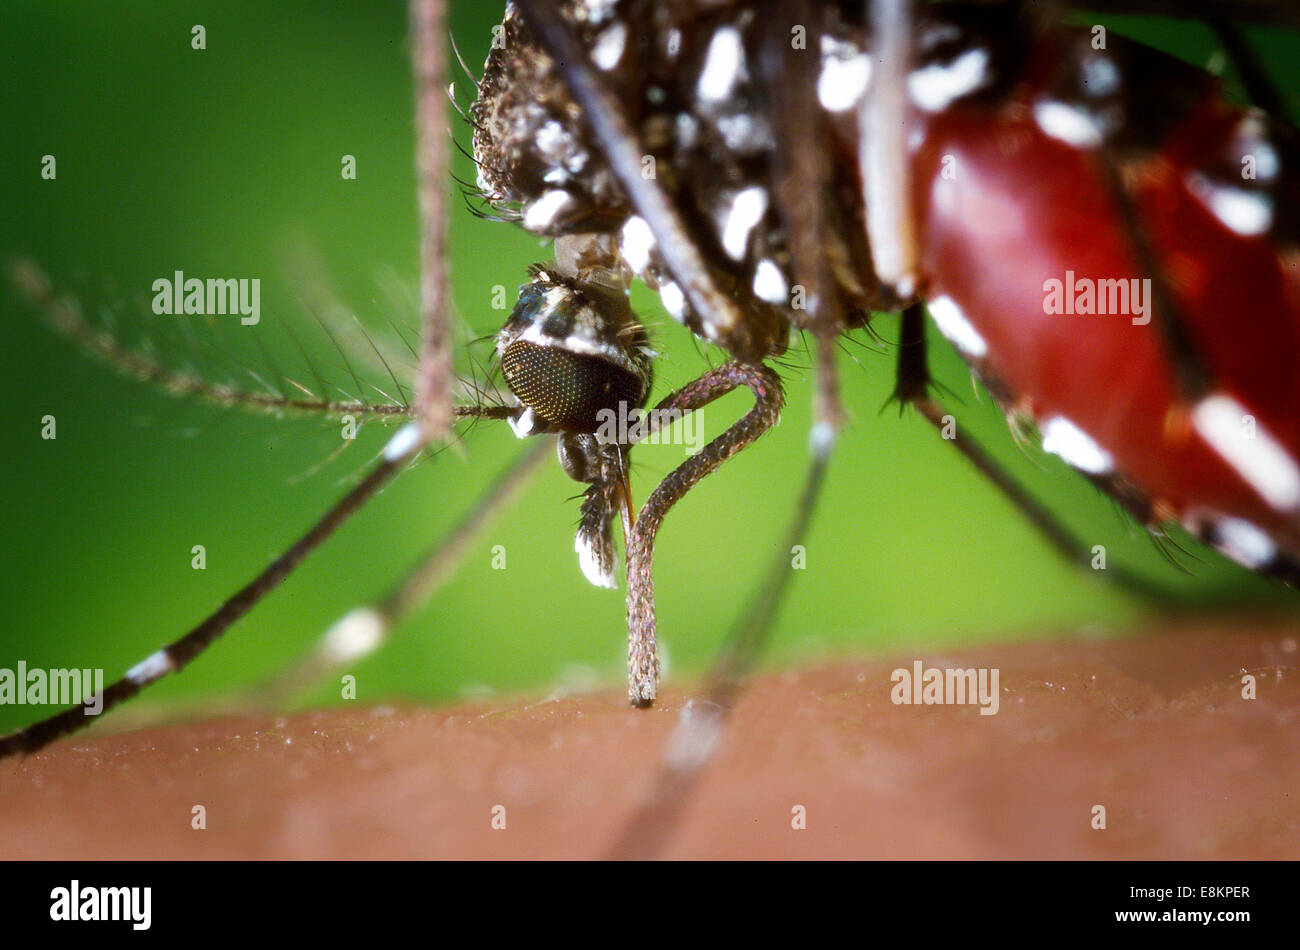 Der Rüssel eine Aedes Albopictus Mücken ernähren sich von menschlichem Blut unter experimentellen Bedingungen Aedes Albopictus Mücke, Stockfoto